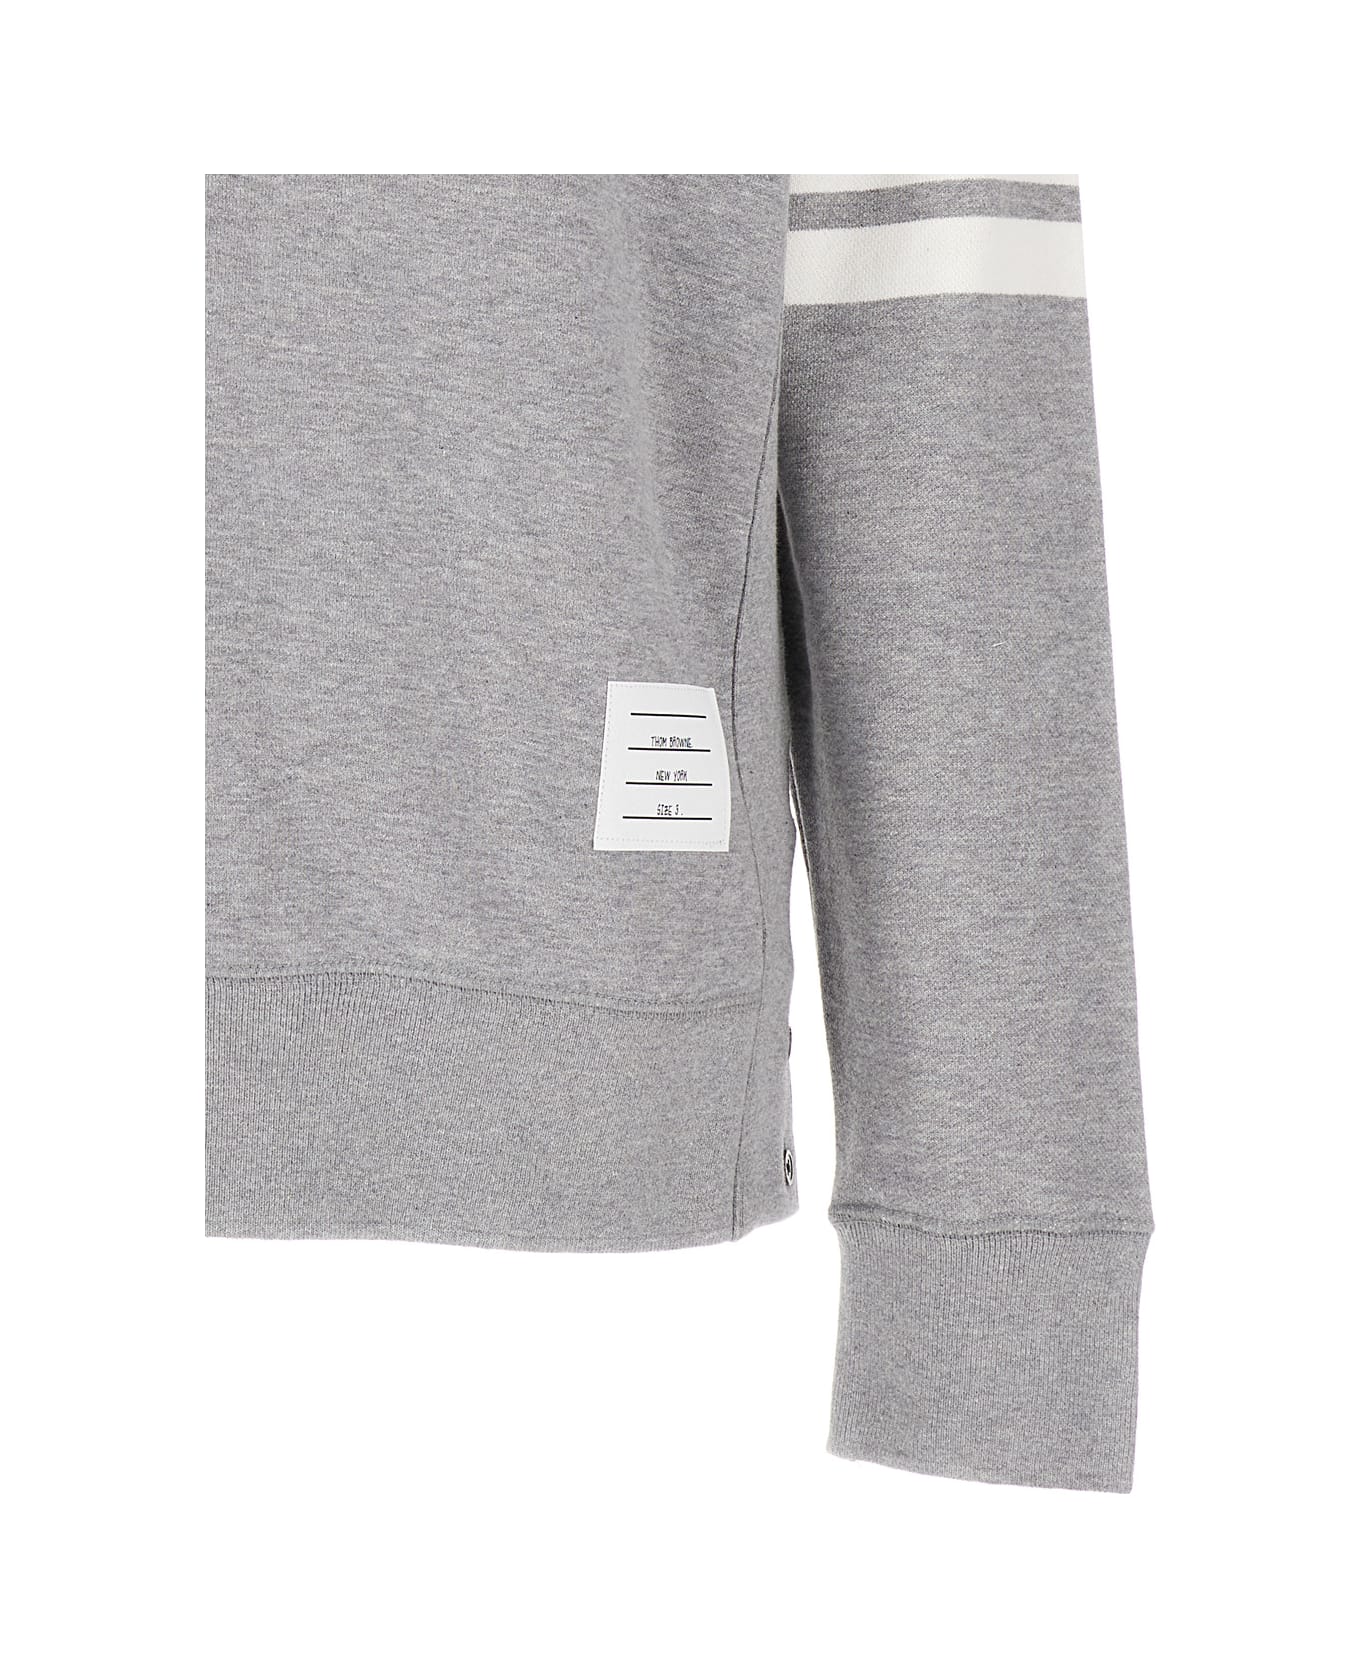 Thom Browne Grey Melange Sweatshirt With 4 Bar Tab In Cotton Man Thom Browne - Grey フリース